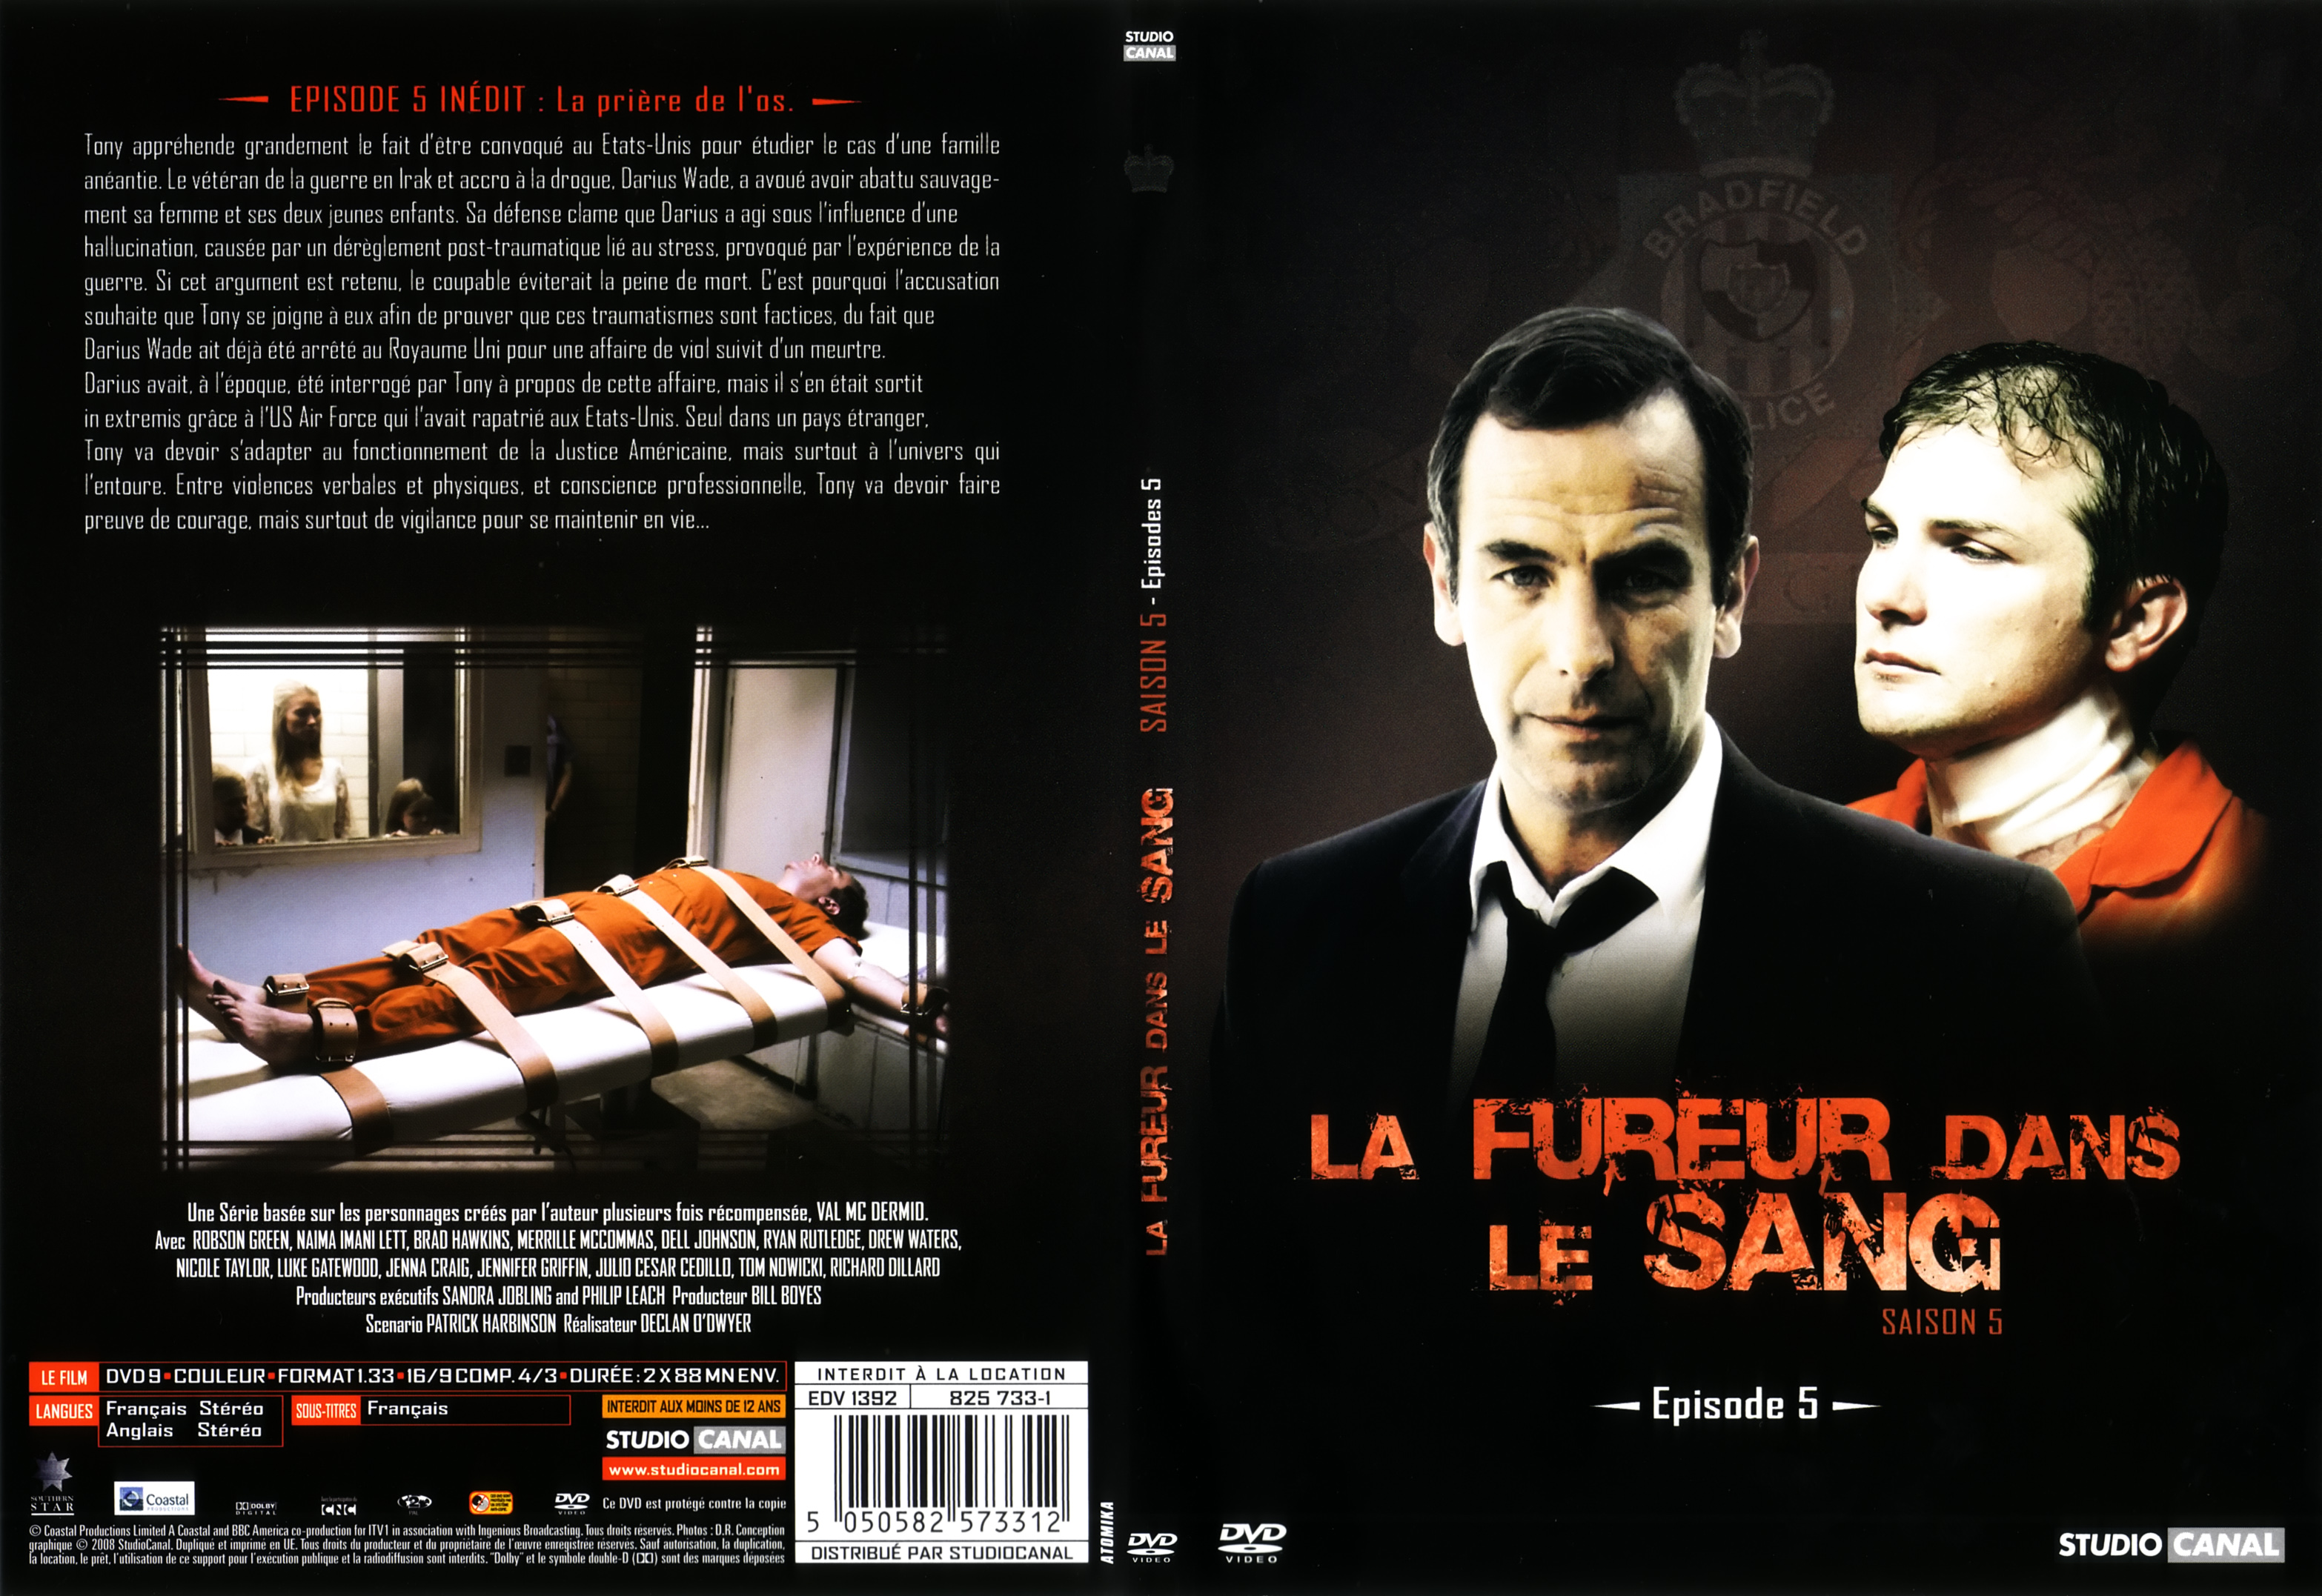 Jaquette DVD La fureur dans le sang saison 5 DVD 3